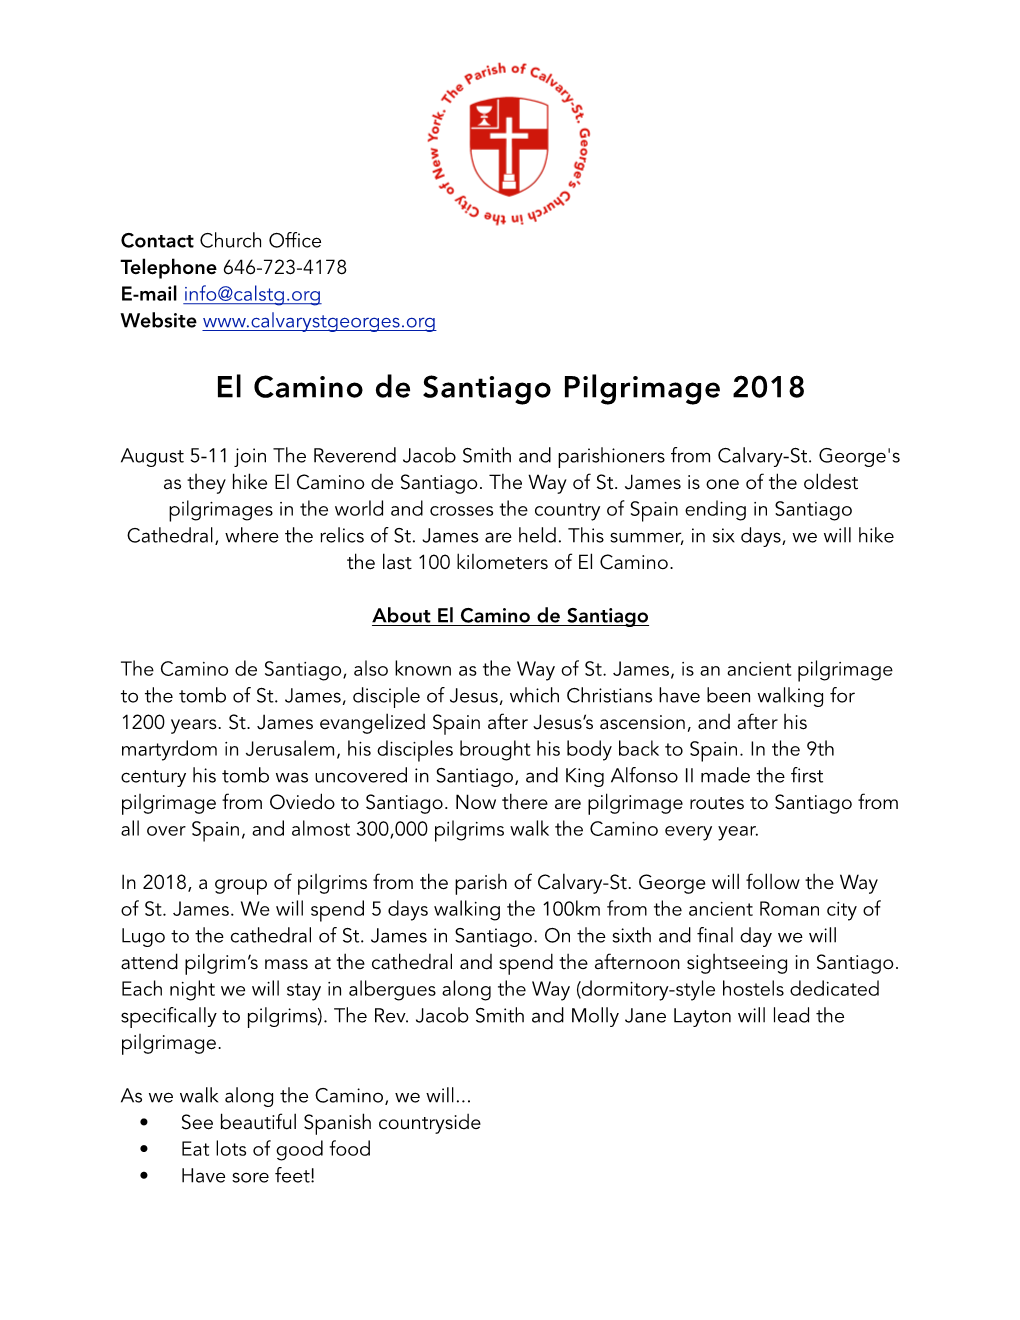 El Camino De Santiago Pilgrimage 2018